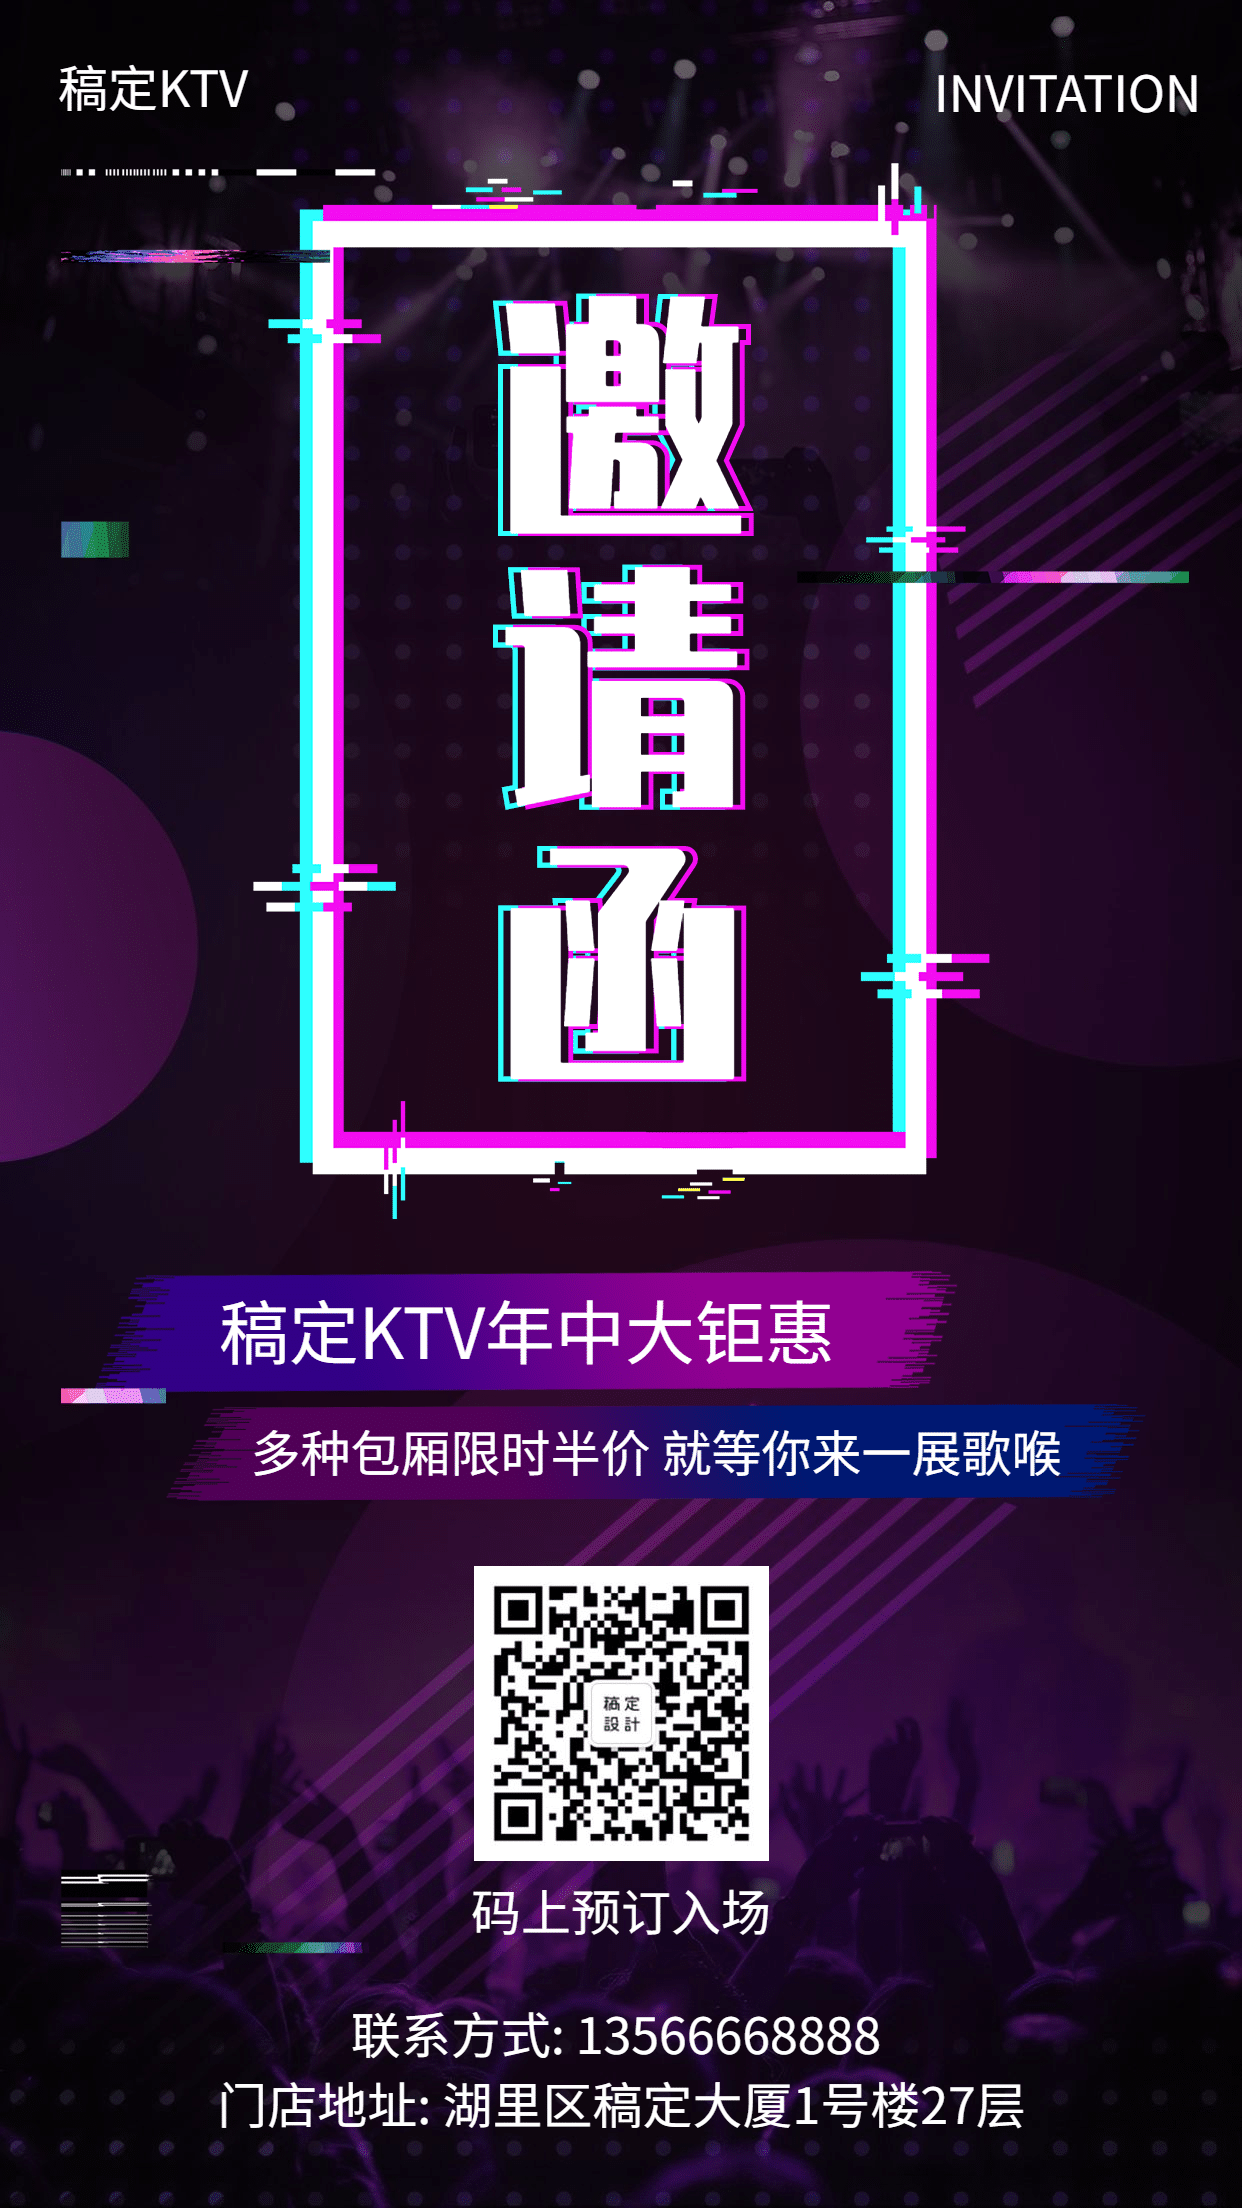 休闲娱乐抖音酷炫KTV邀请函手机海报